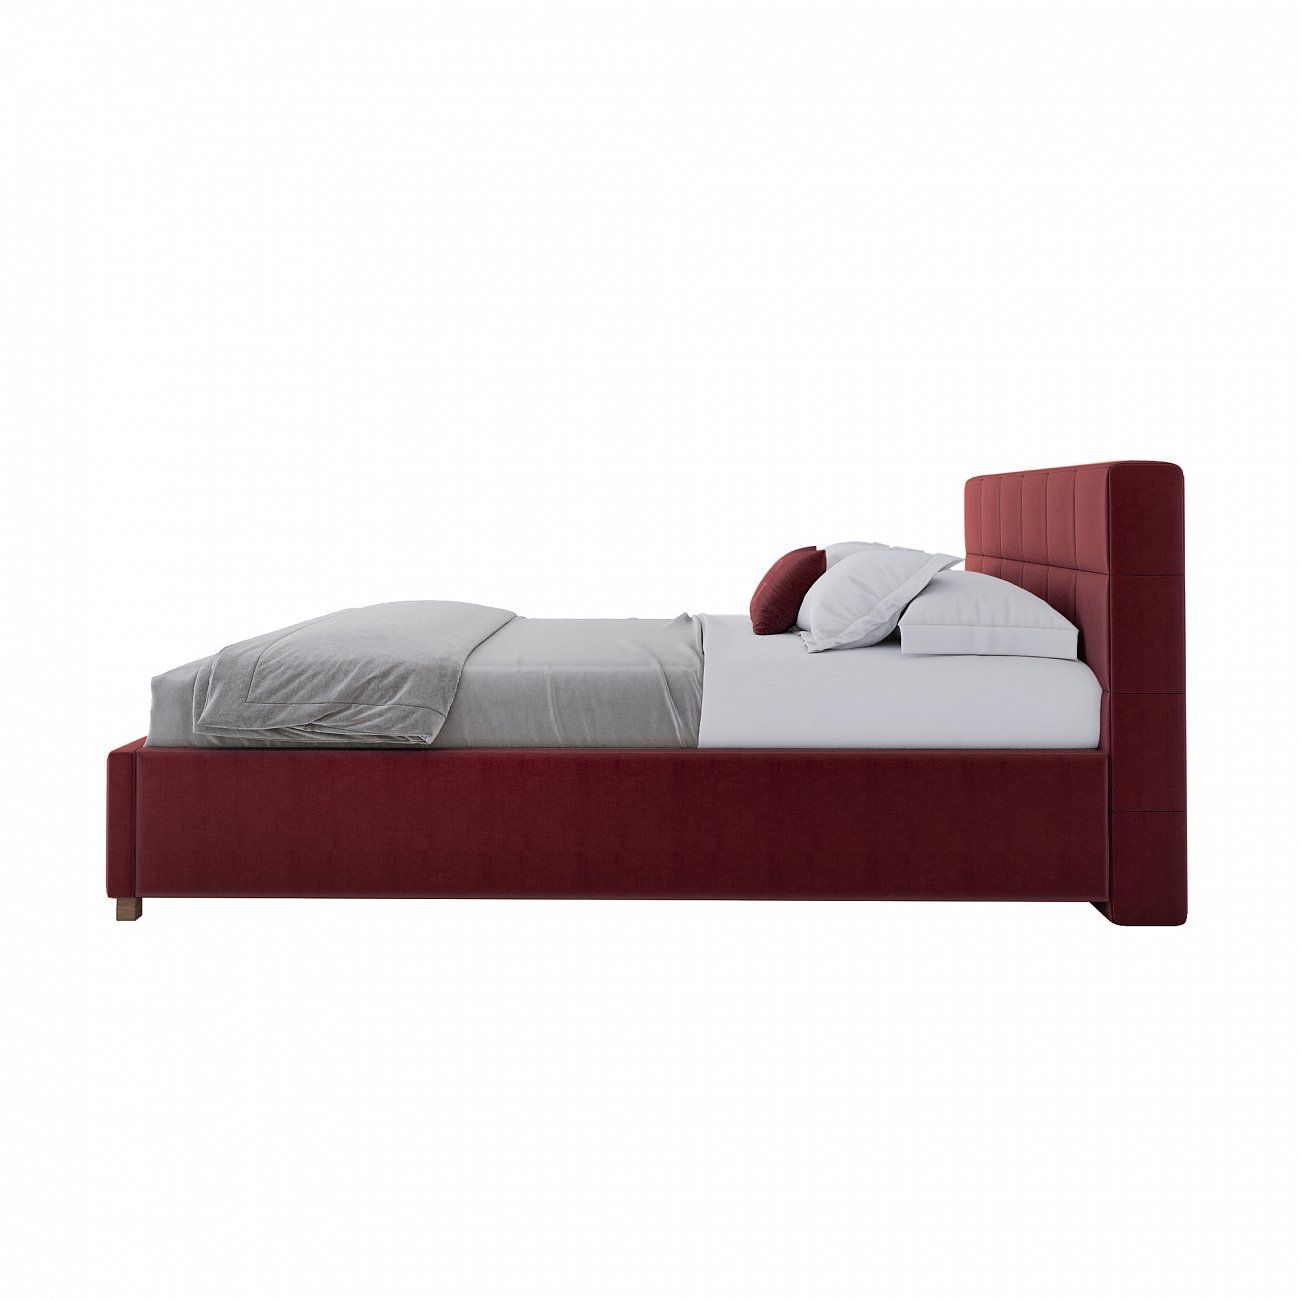 Кровать подростковая с мягким изголовьем 140х200 см красная Wales